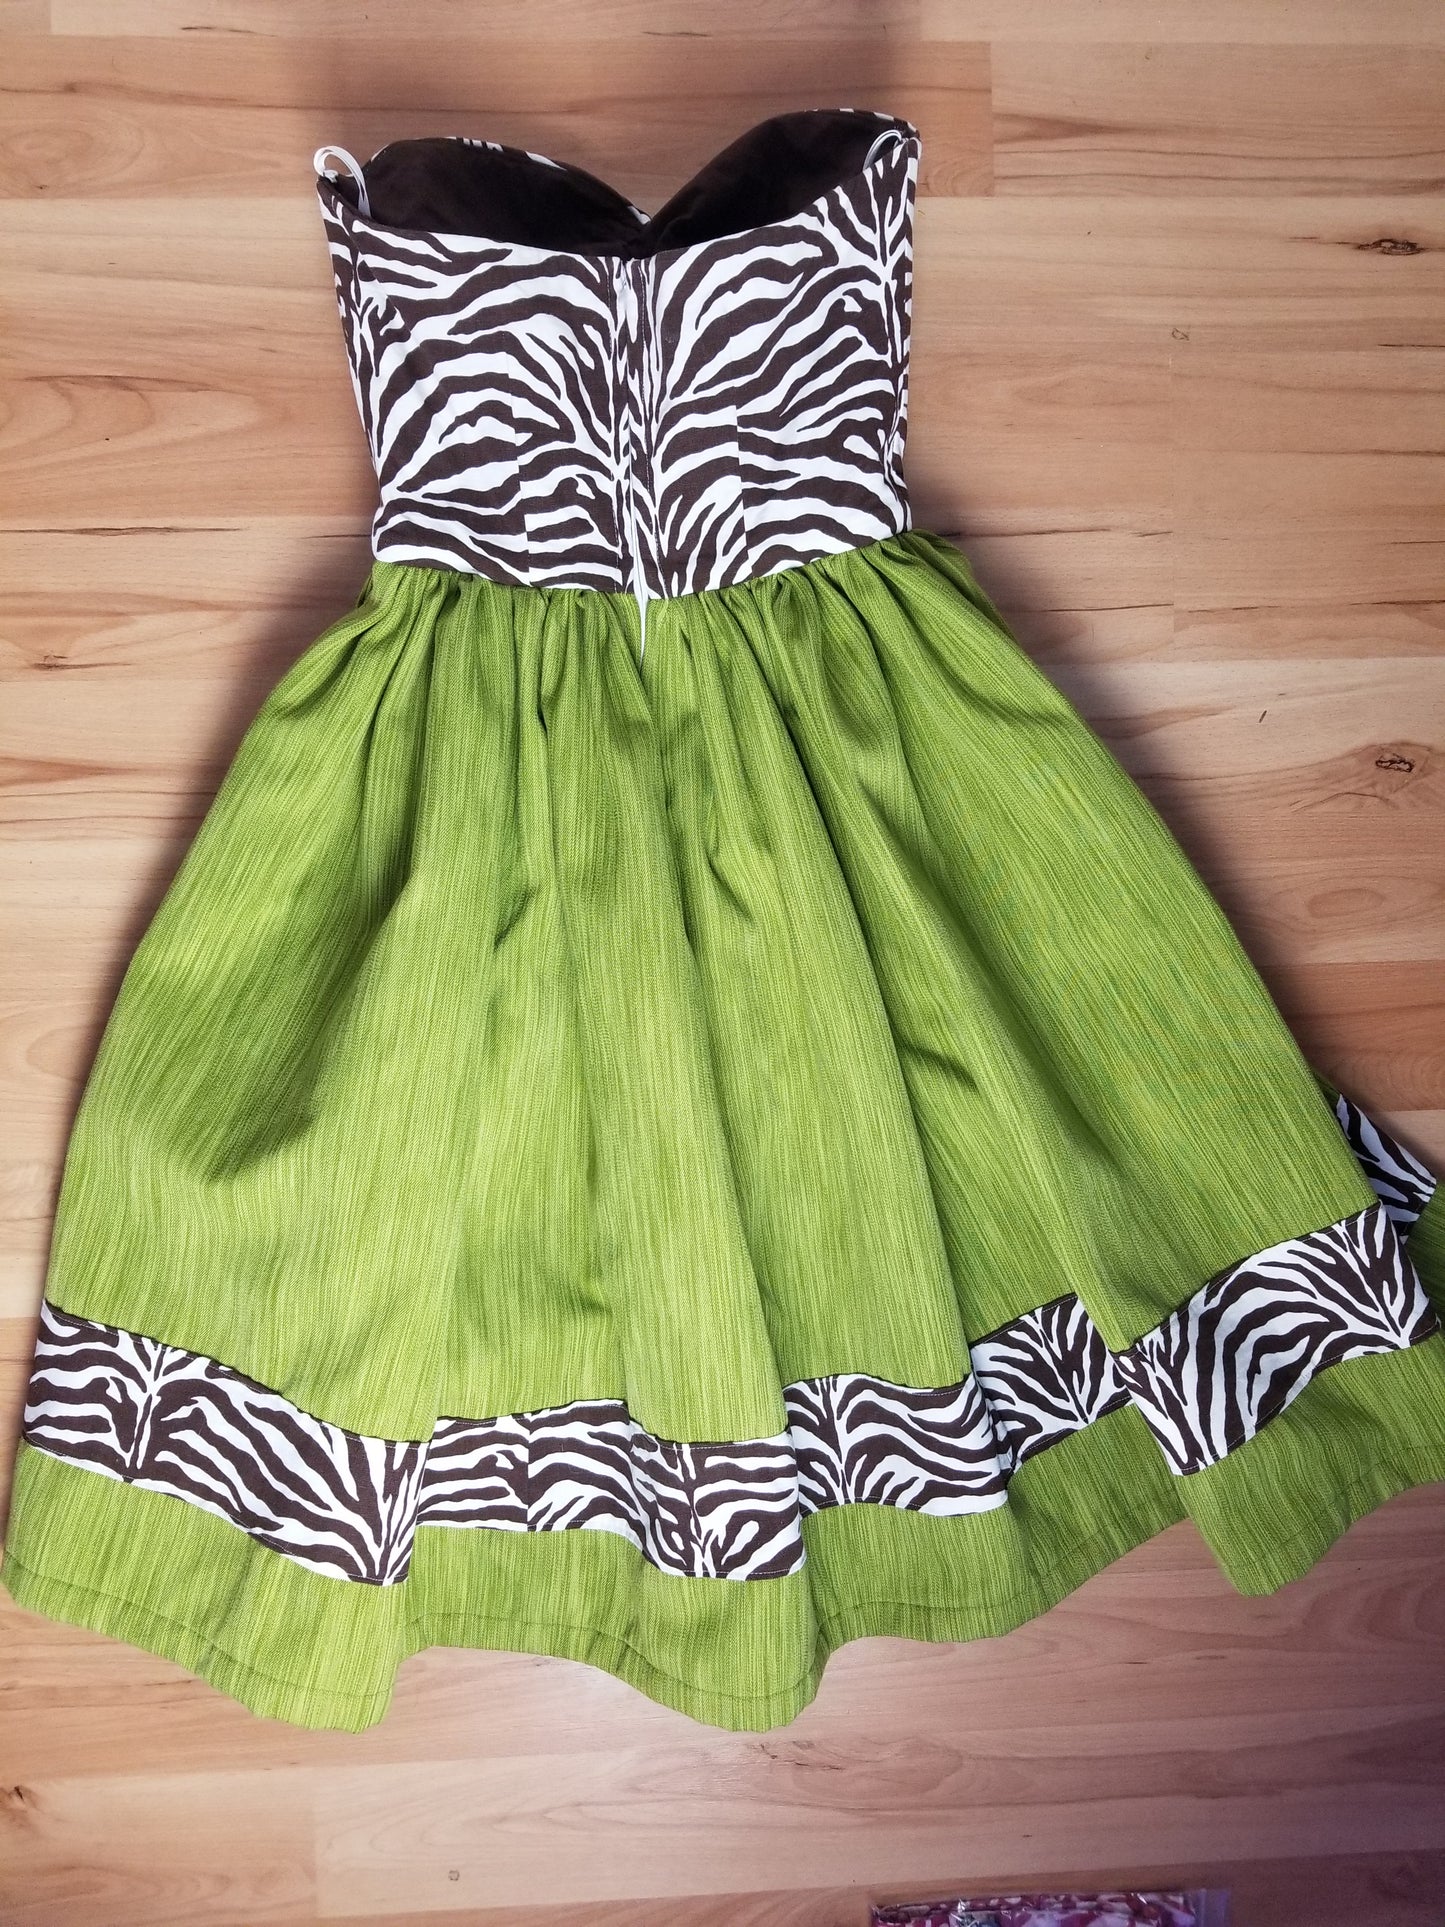 Zebra Chartruese Women's Dress by PMdesigns by Pamela Marie